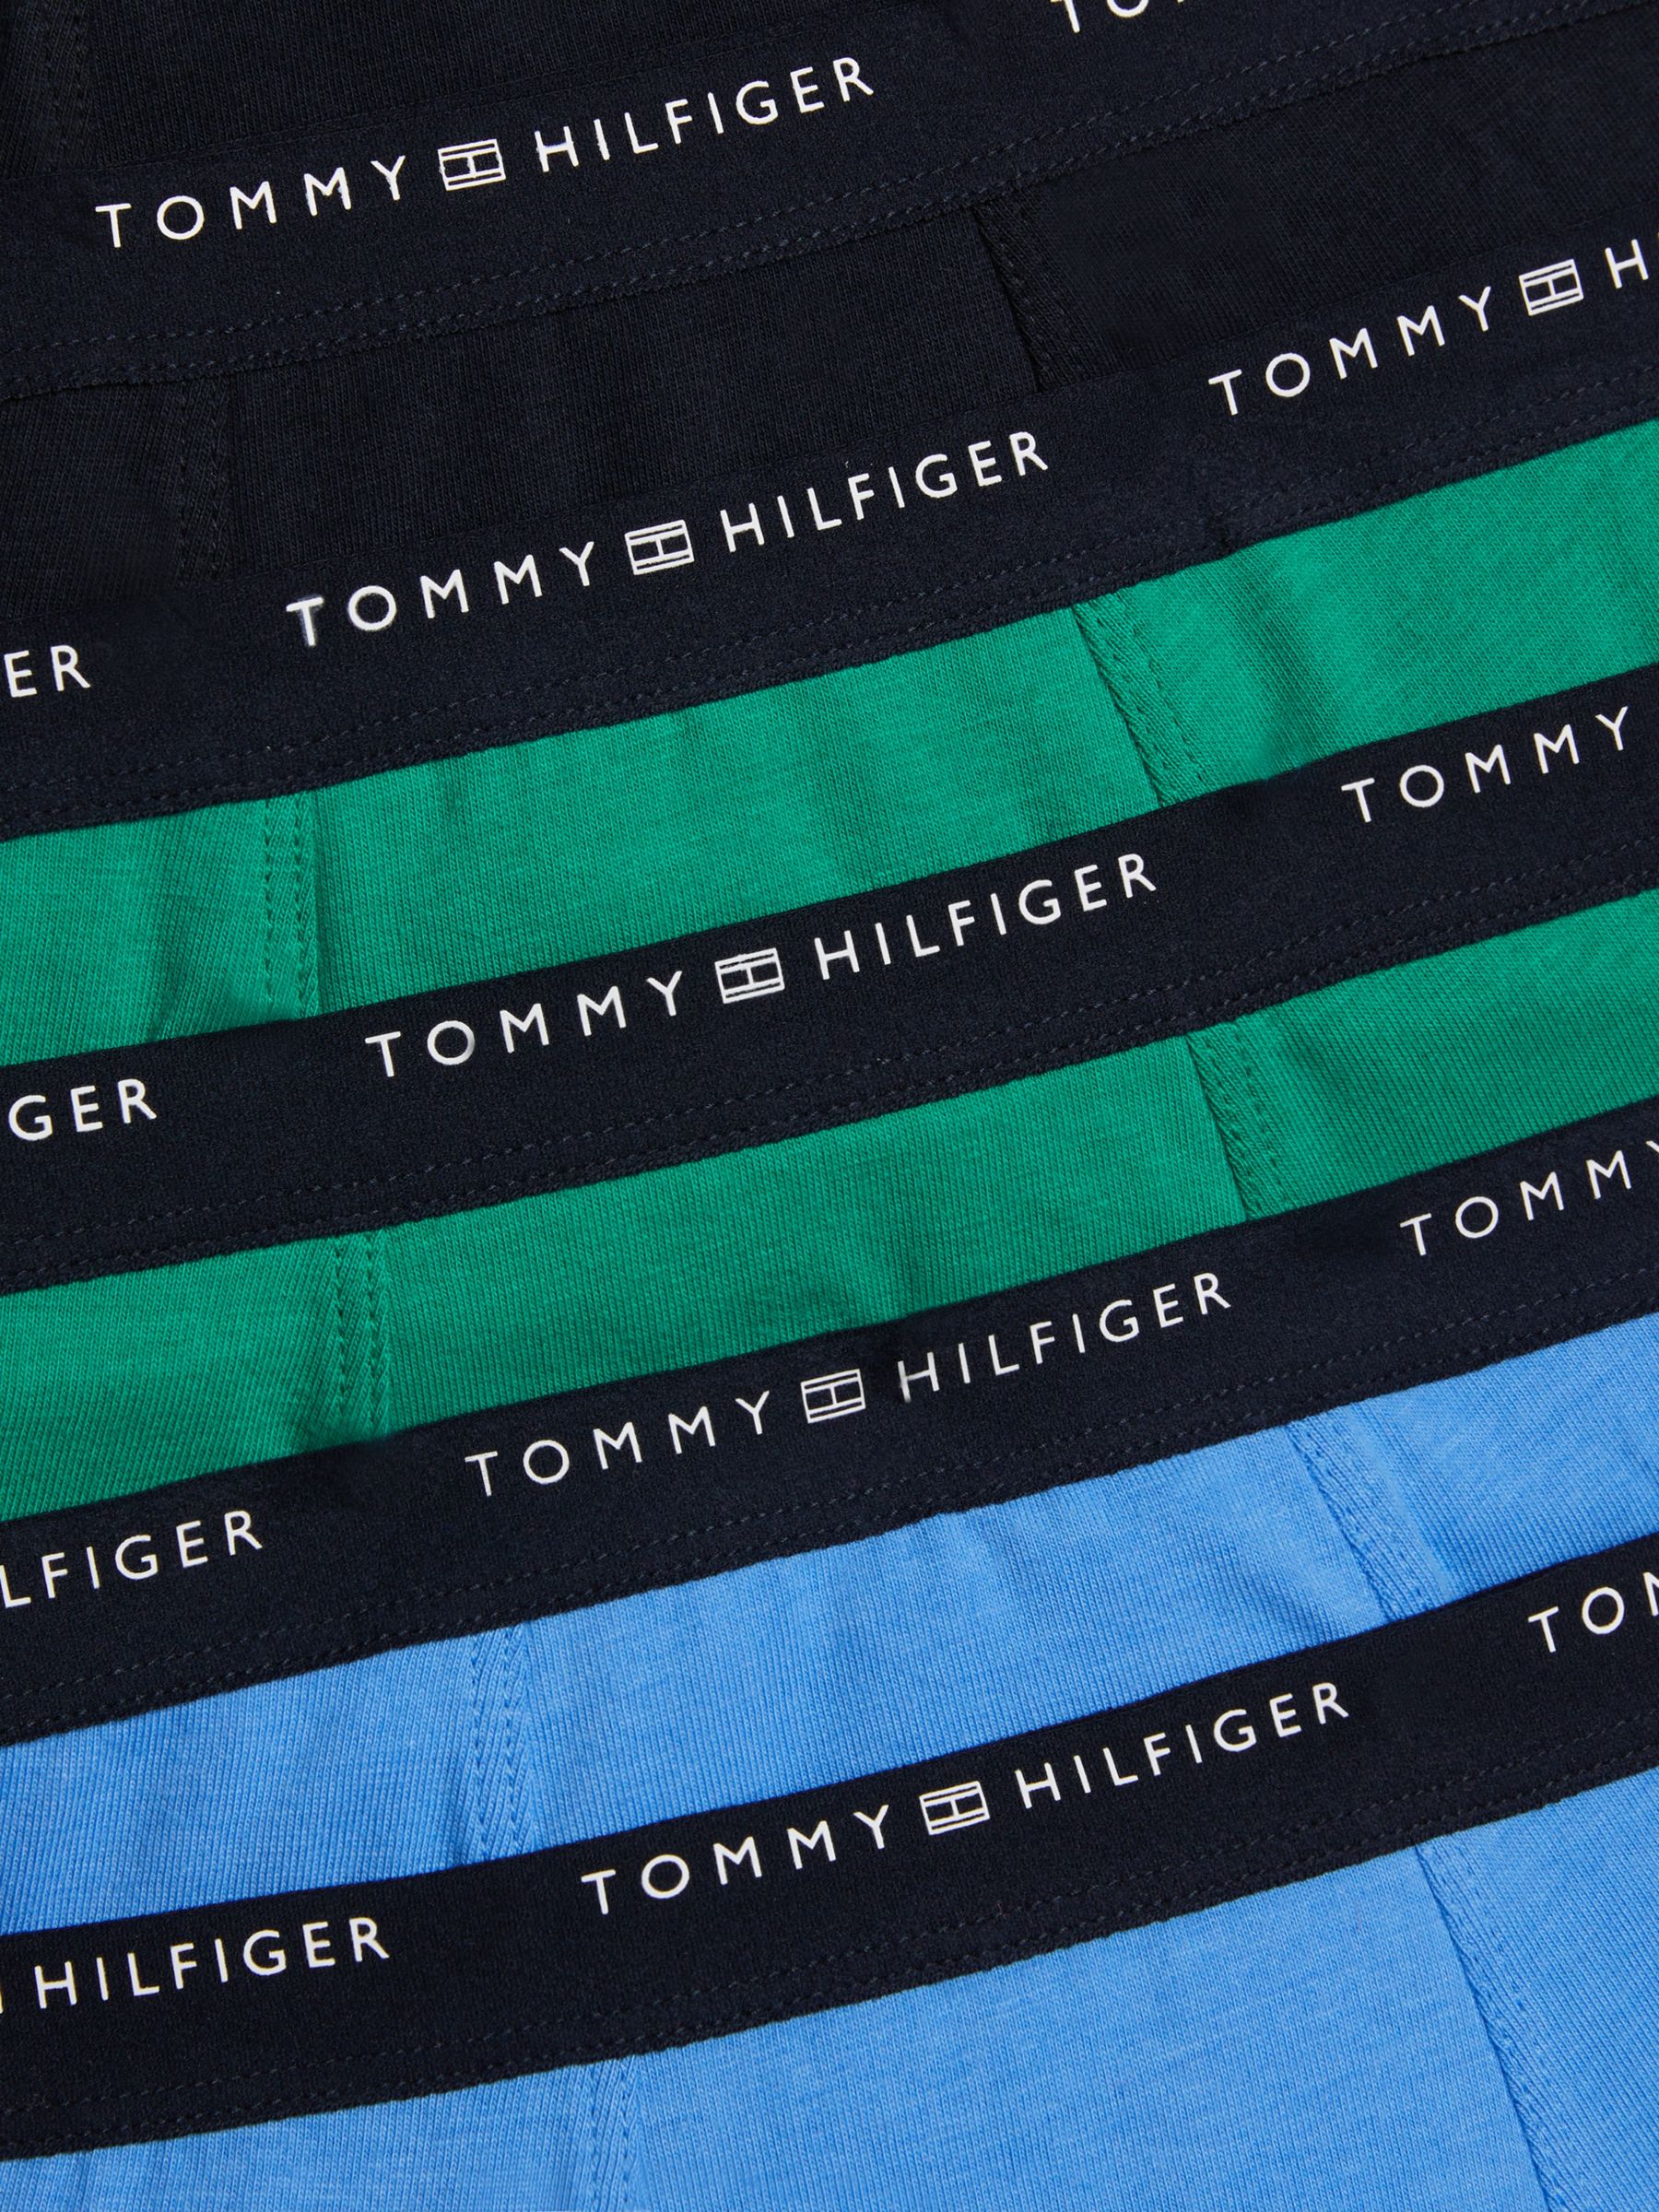 Buy Tommy Hilfiger Kids' Plain Logo Trunks, Pack of 7, Multi Online at johnlewis.com